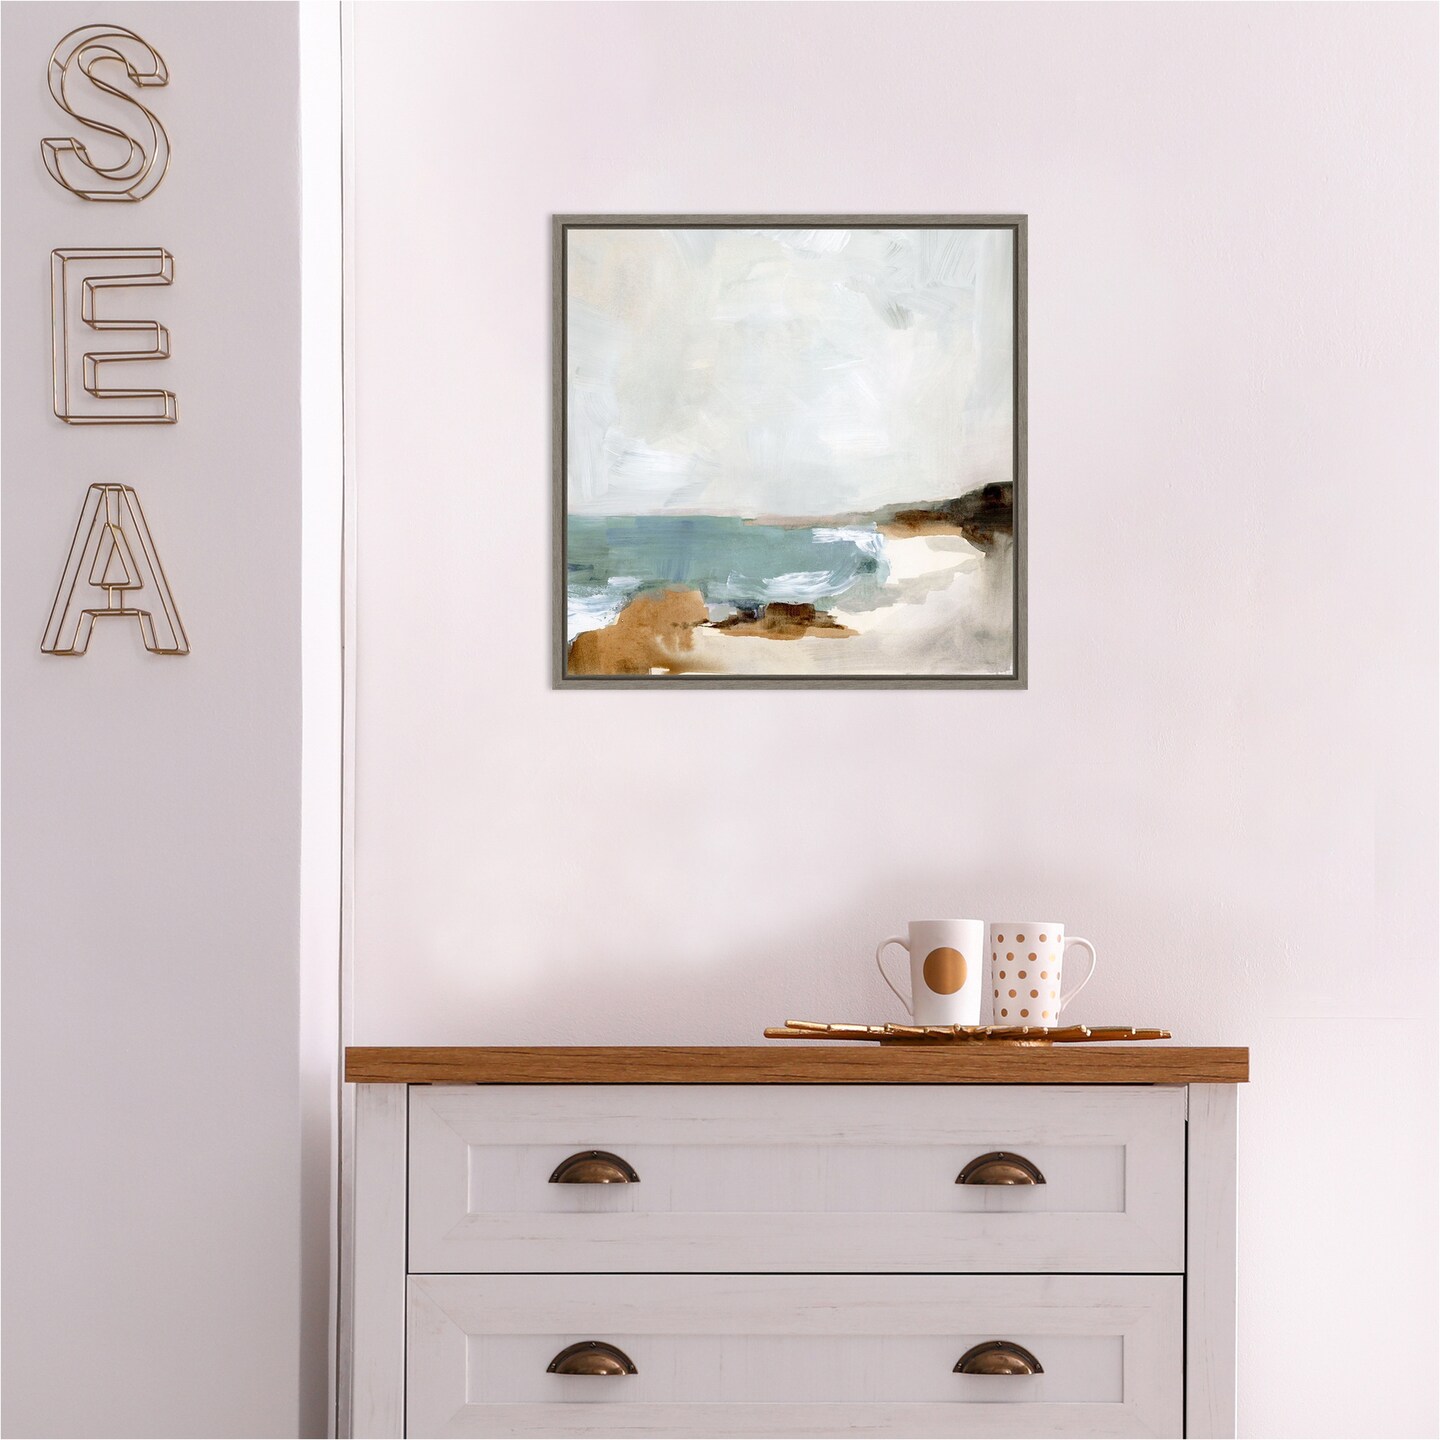 Ocean Beach Sigh II by Victoria Barnes 16-in. W x 16-in. H. Canvas Wall Art Print Framed in Grey